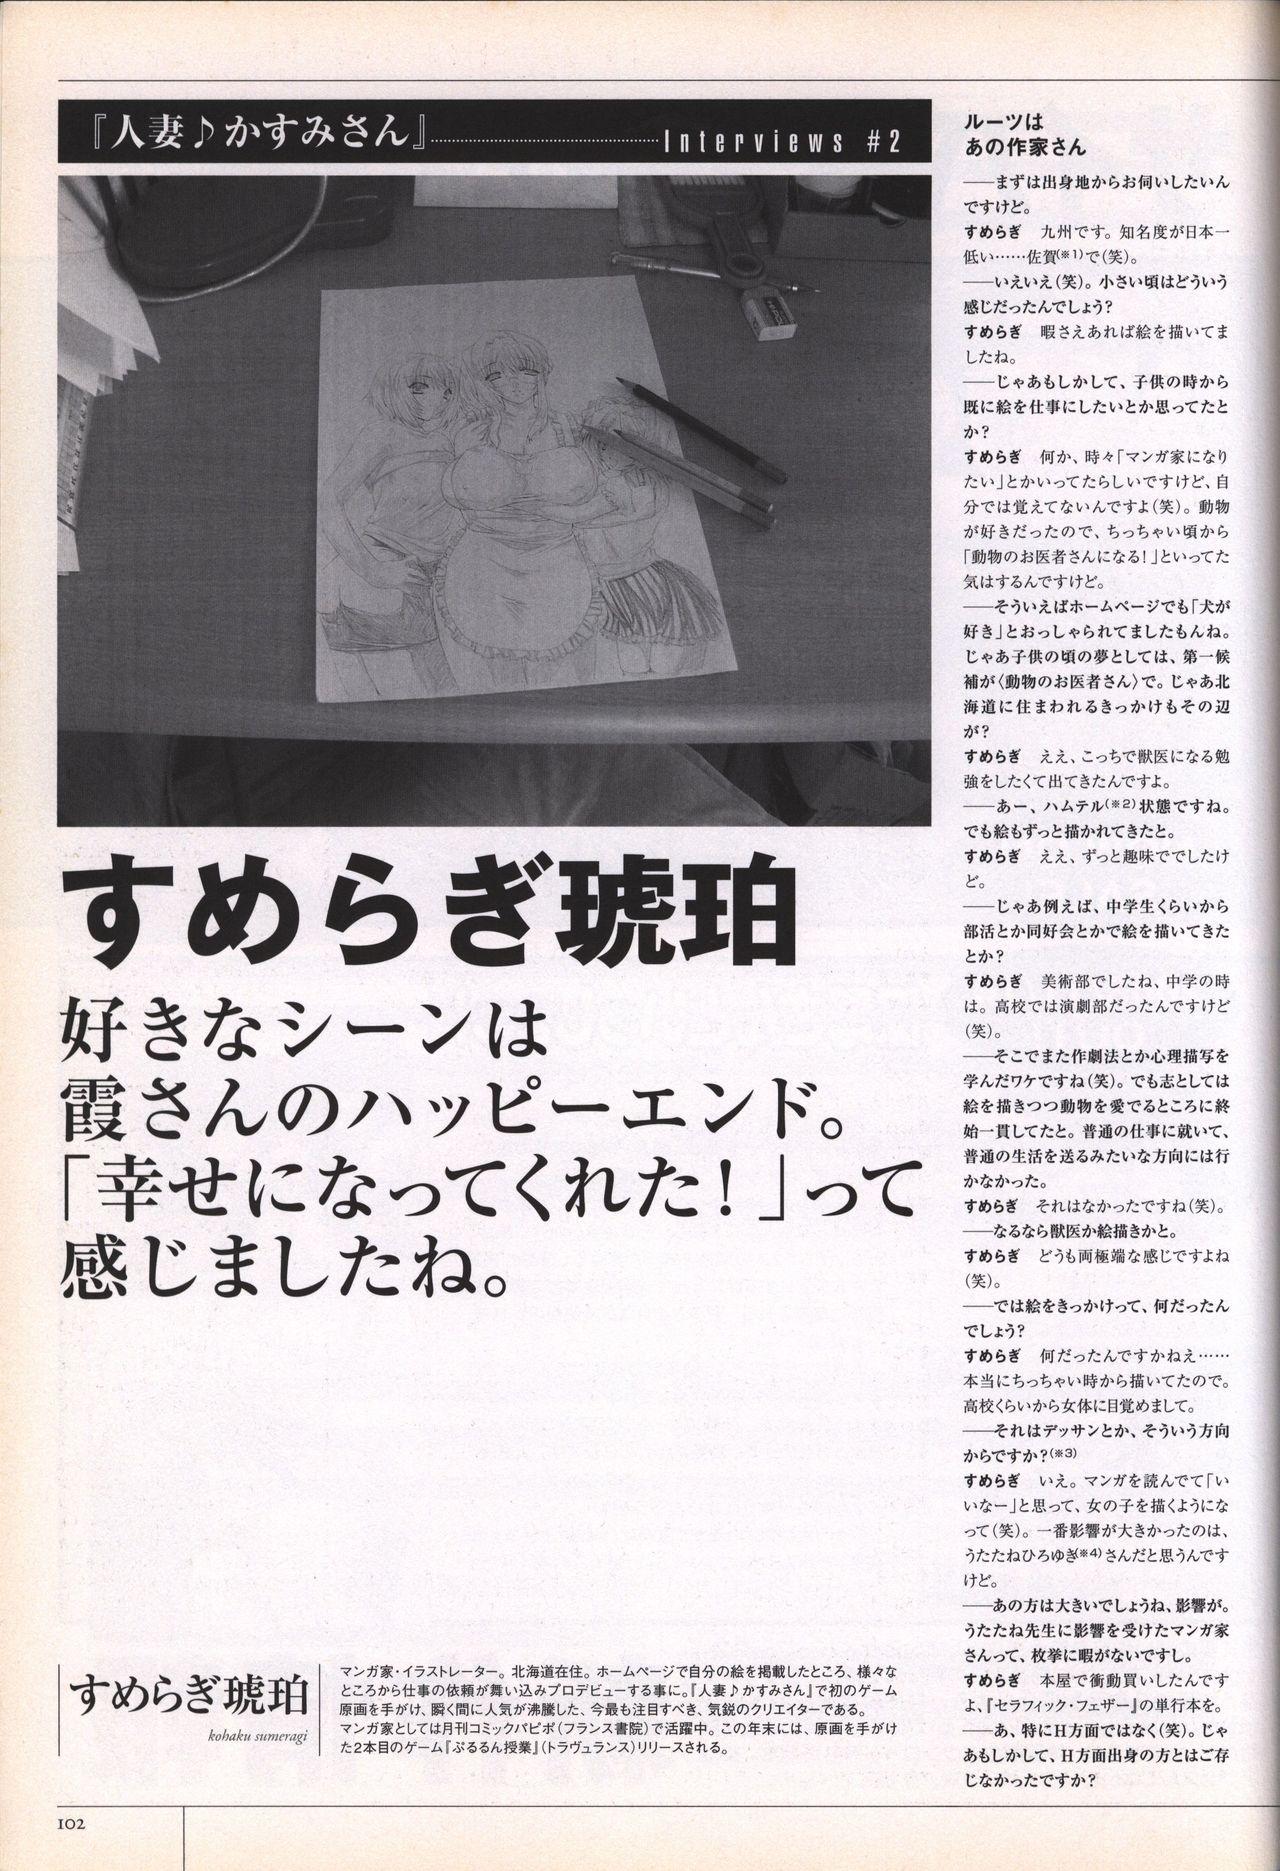 Hitozuma Kasumi-san office fanbook 103